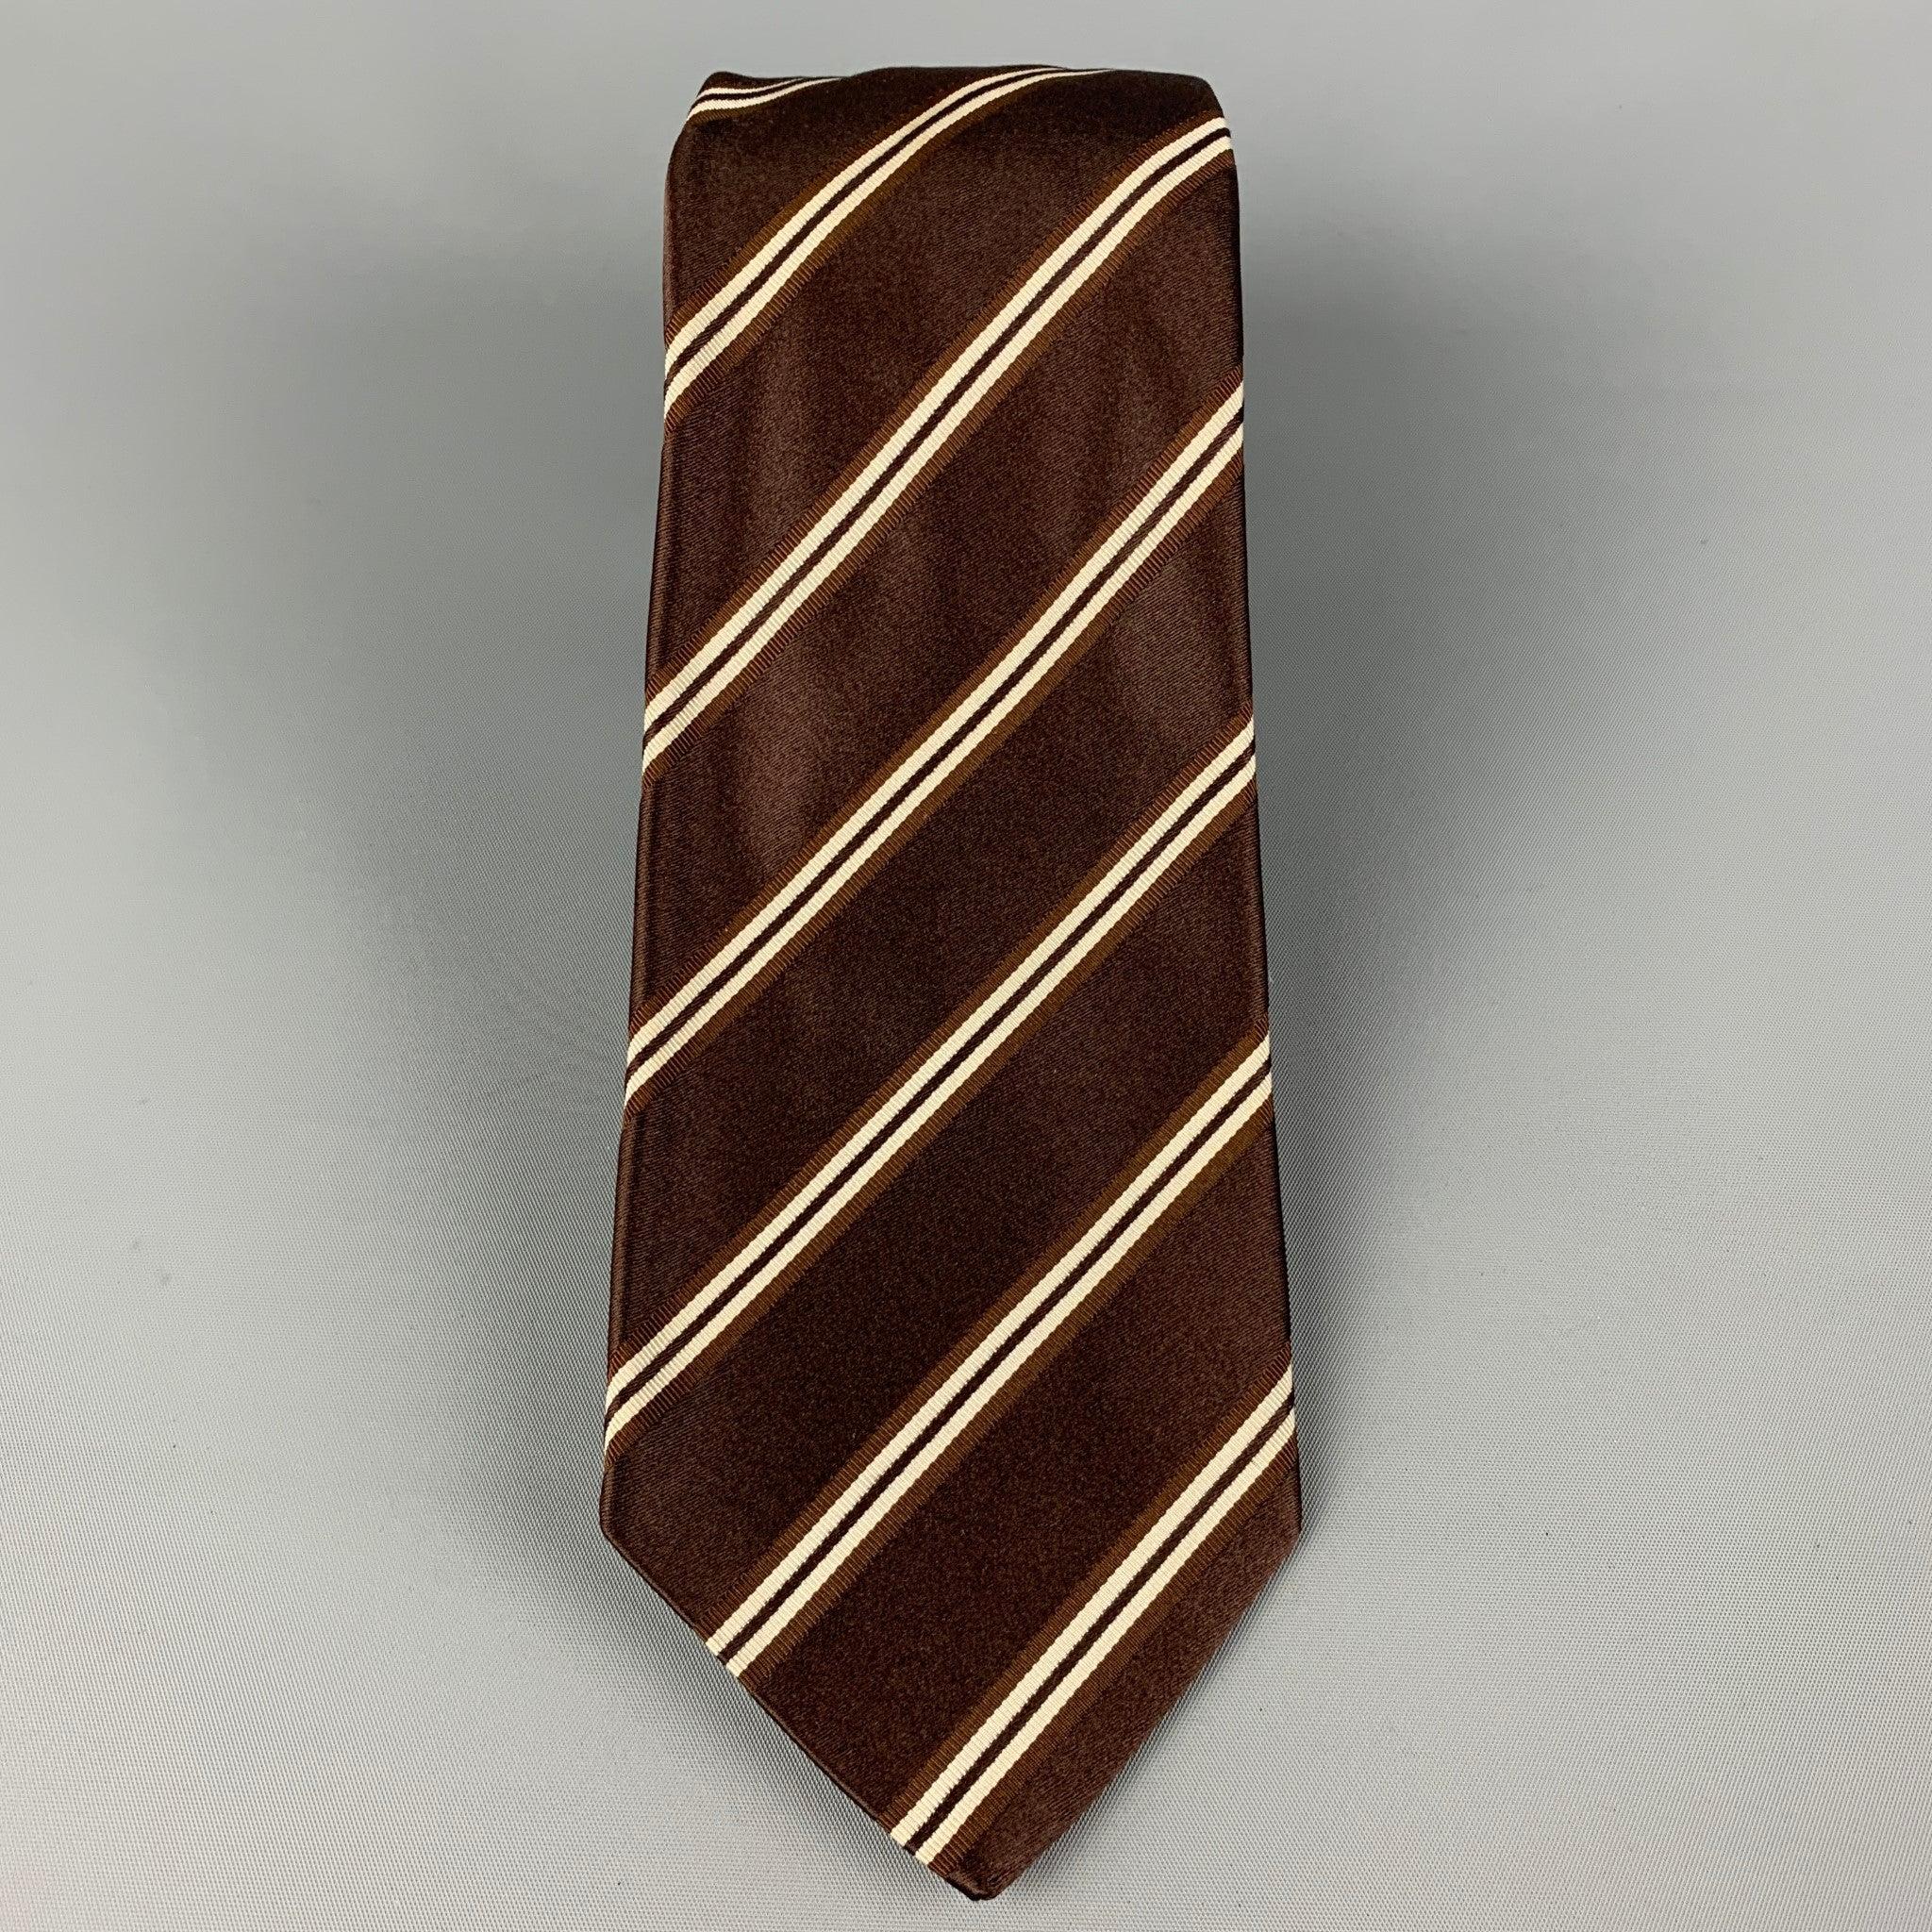 La cravate KITON se présente sous la forme d'une soie marron et blanche avec un imprimé en diagonale. Fabriqué en Italie. Très bon état d'usage.largeur : 3.75 pouces  Longueur : 60 pouces 

  
  
 
Référence Sui Generis : 120363
Catégorie :